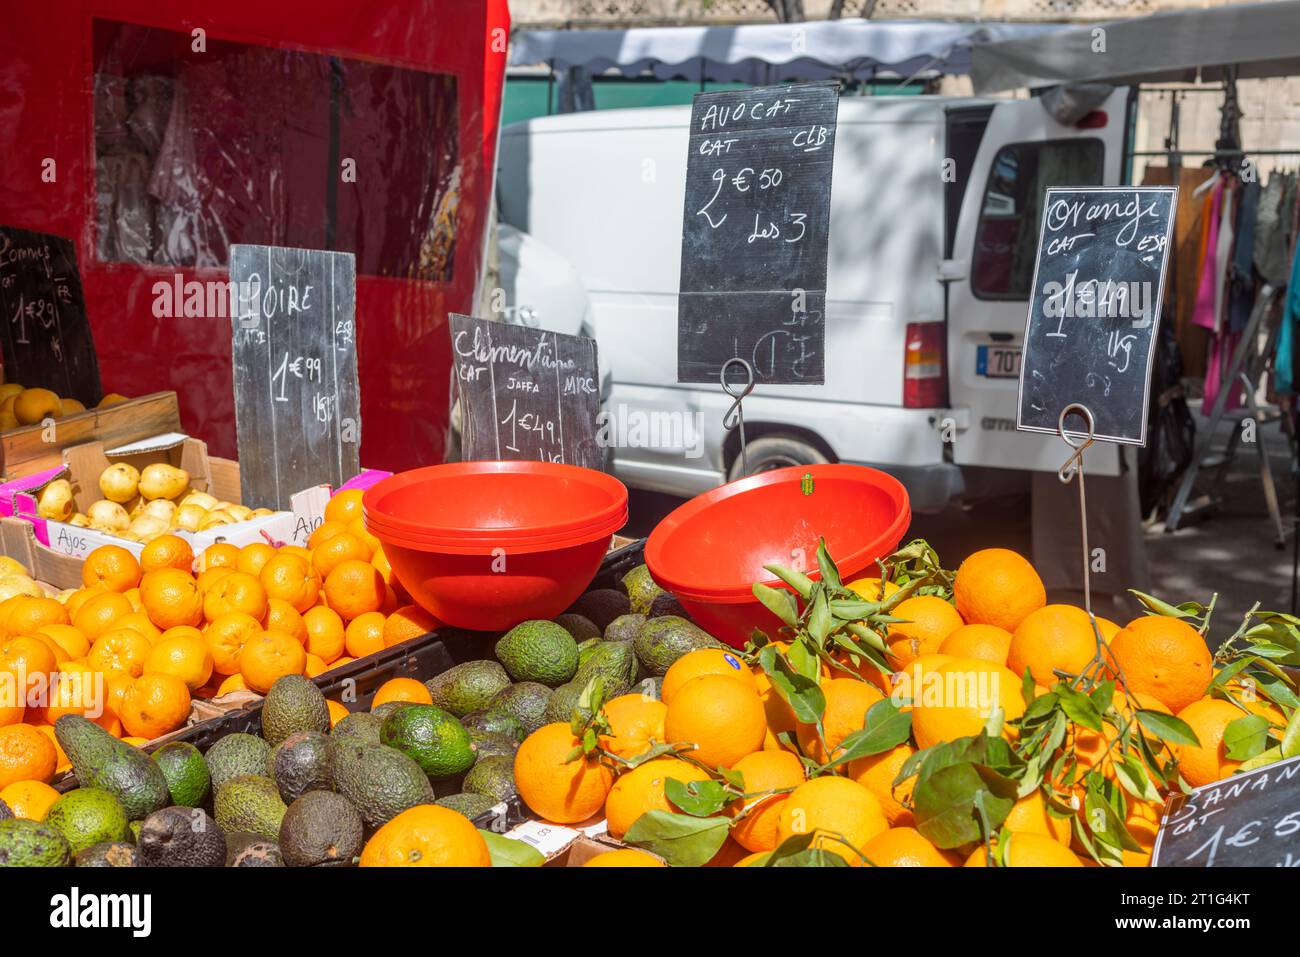 Arance, avocado, pere e clementine in vendita nel mercato all'aperto del sabato ad Arles, Provenza, Francia meridionale. Ciotole di plastica rosse in primo piano. Foto Stock